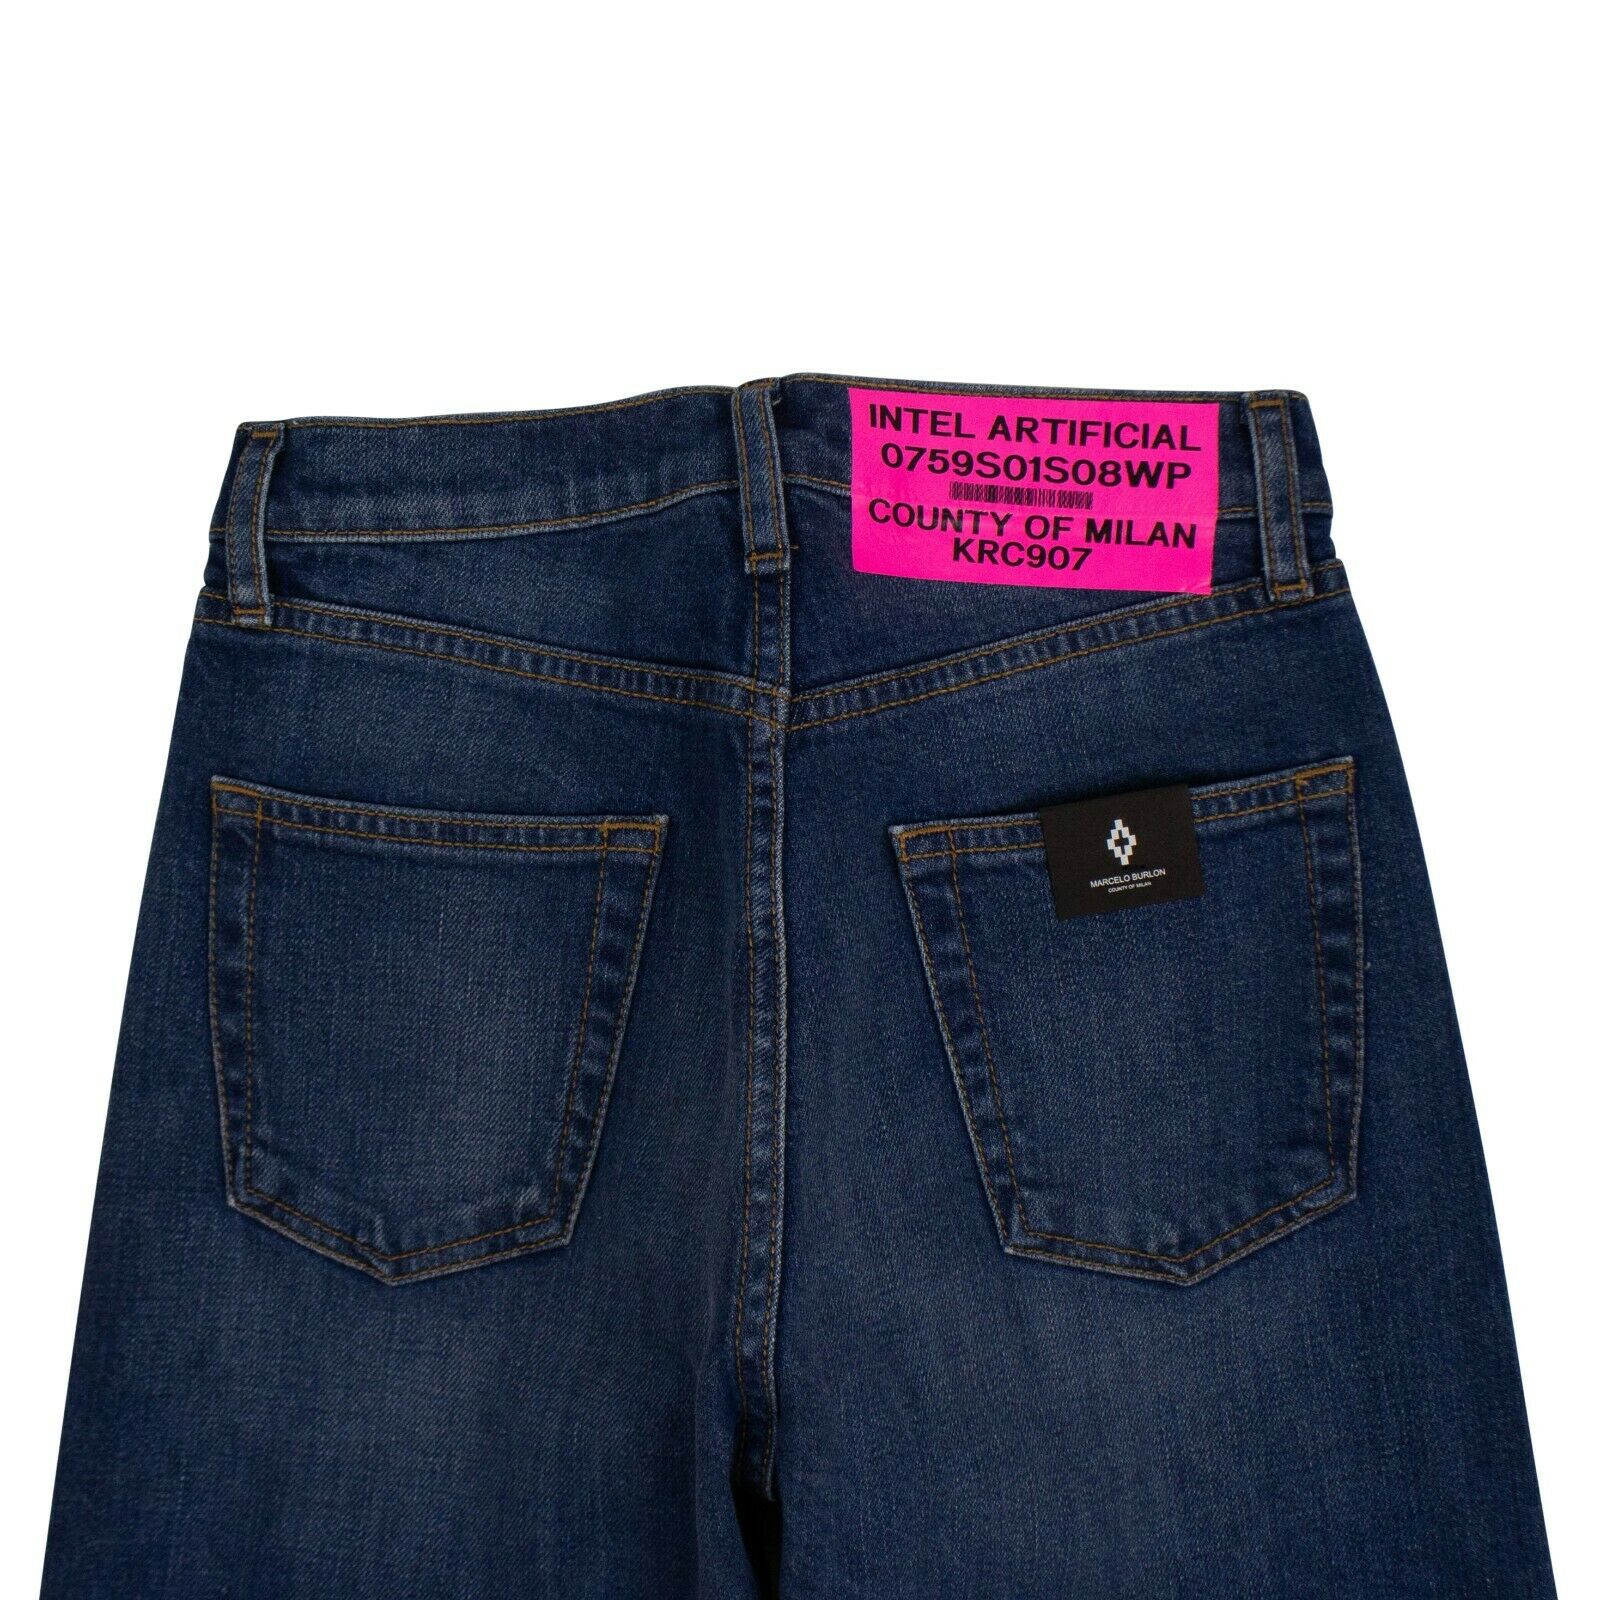 Marcelo Burlon Denim Vintage Two-Tone Slim Jeans Pants - Blue